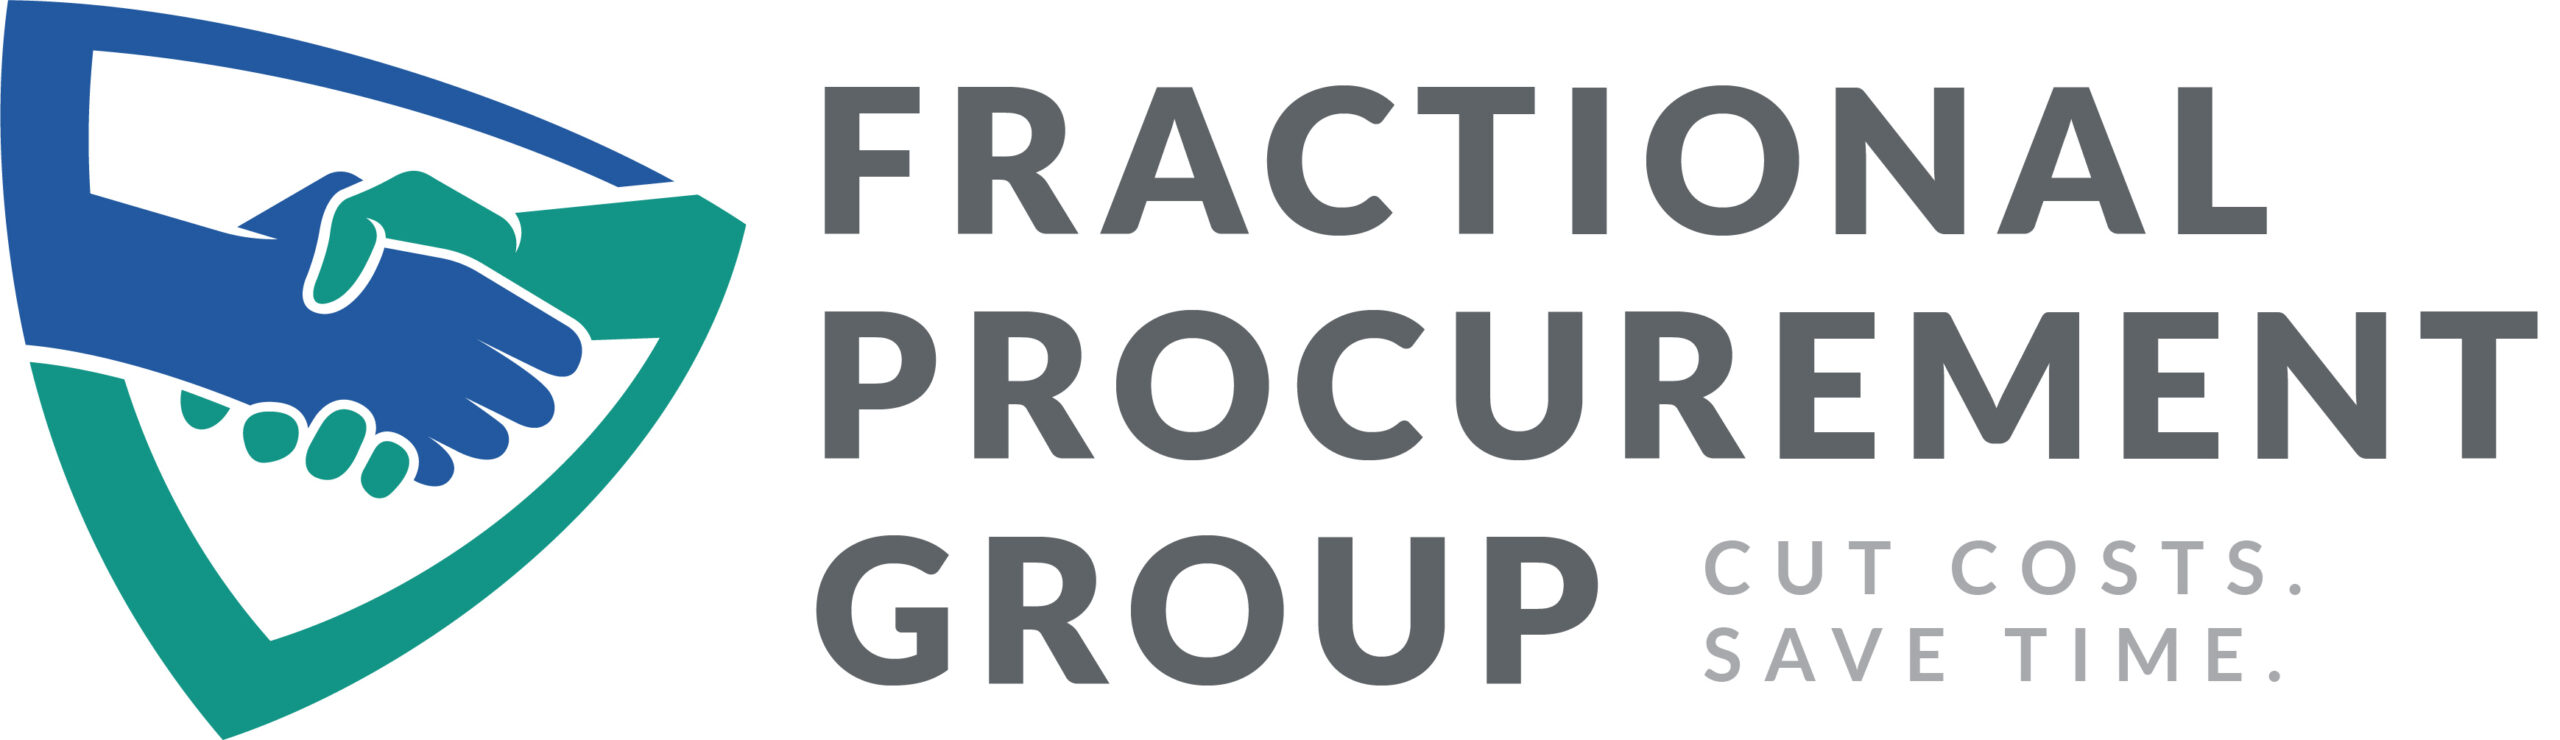 Fractional Procurement Group